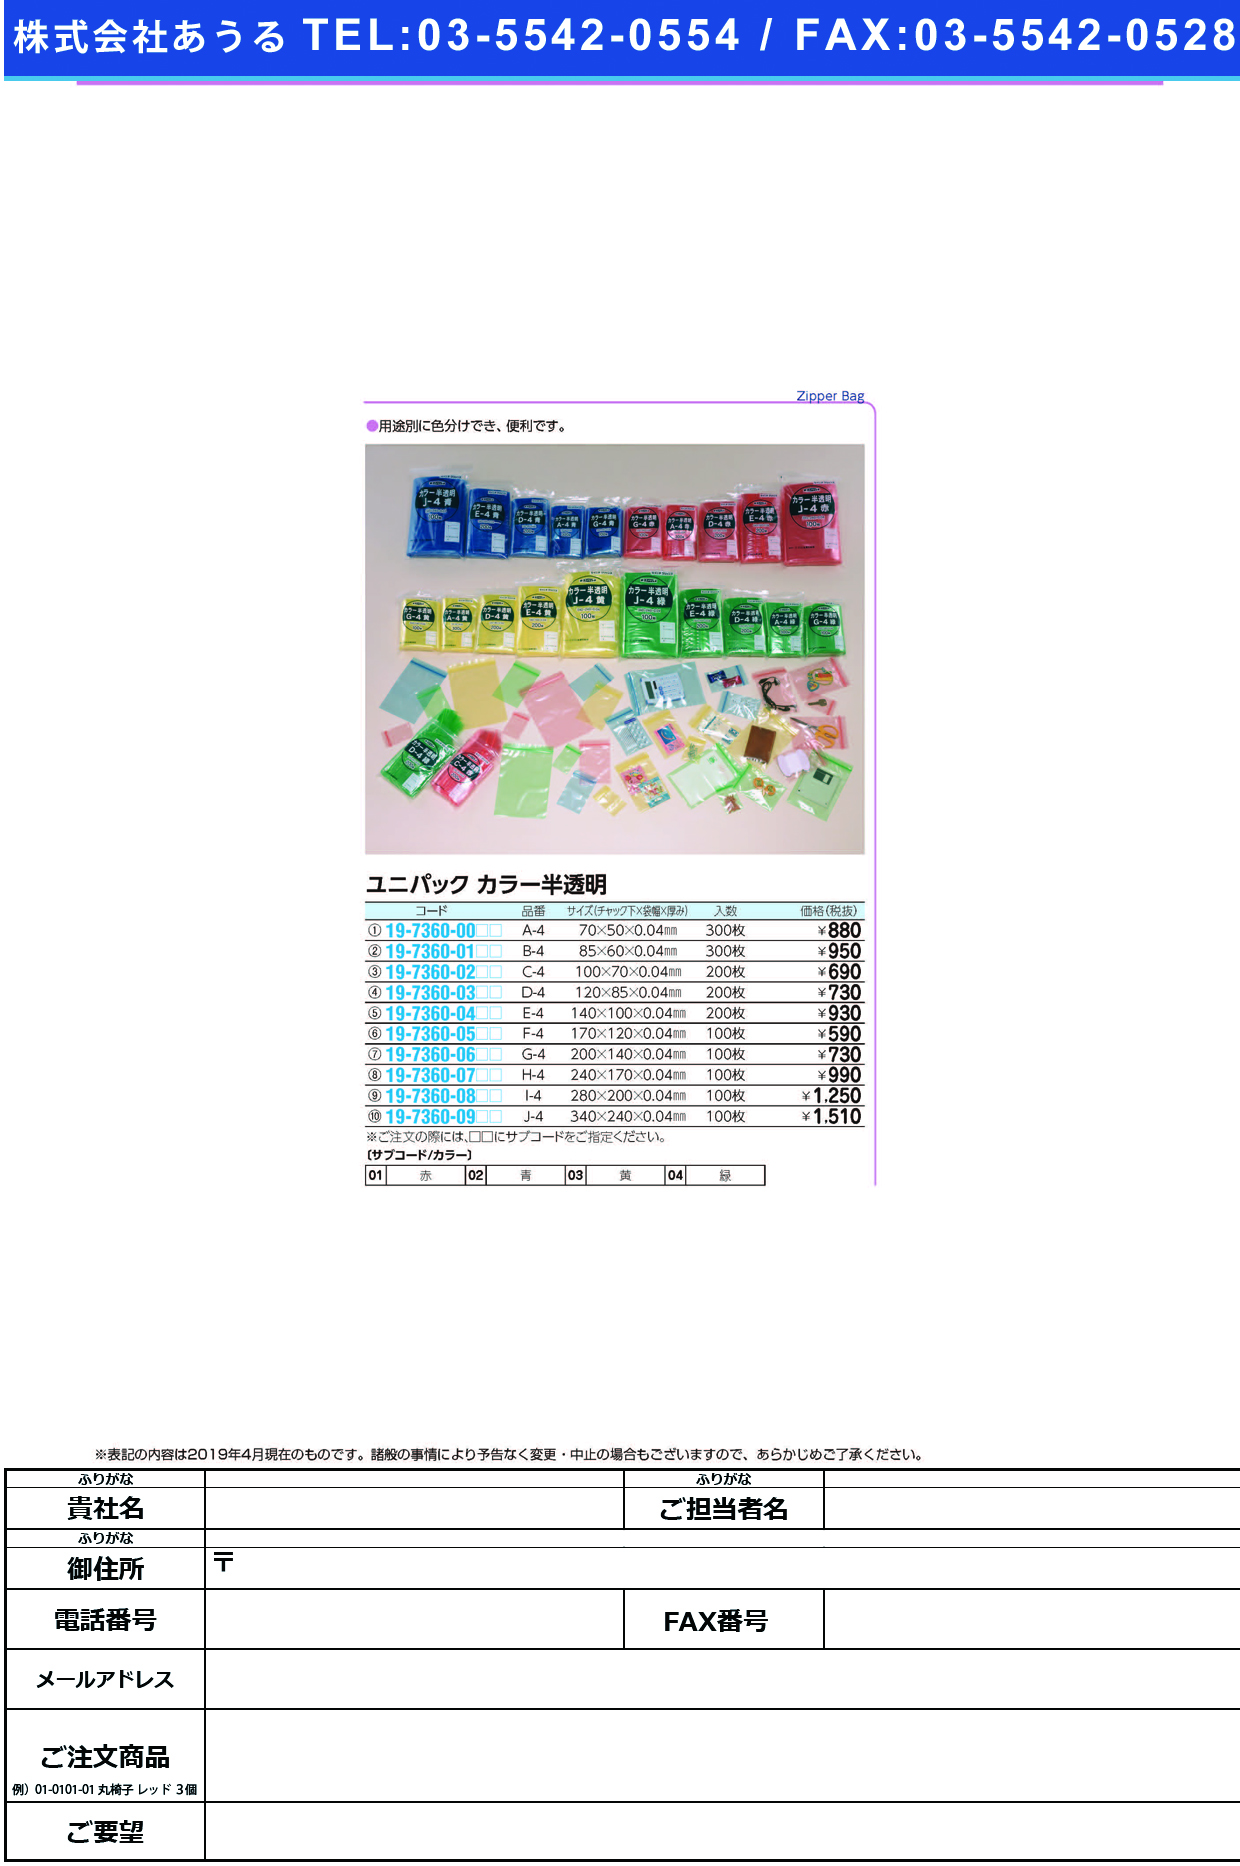 (19-7360-06)ユニパックカラー半透明 G-4(100ﾏｲｲﾘ) ﾕﾆﾊﾟｯｸｶﾗｰﾊﾝﾄｳﾒｲ 緑【1袋単位】【2019年カタログ商品】